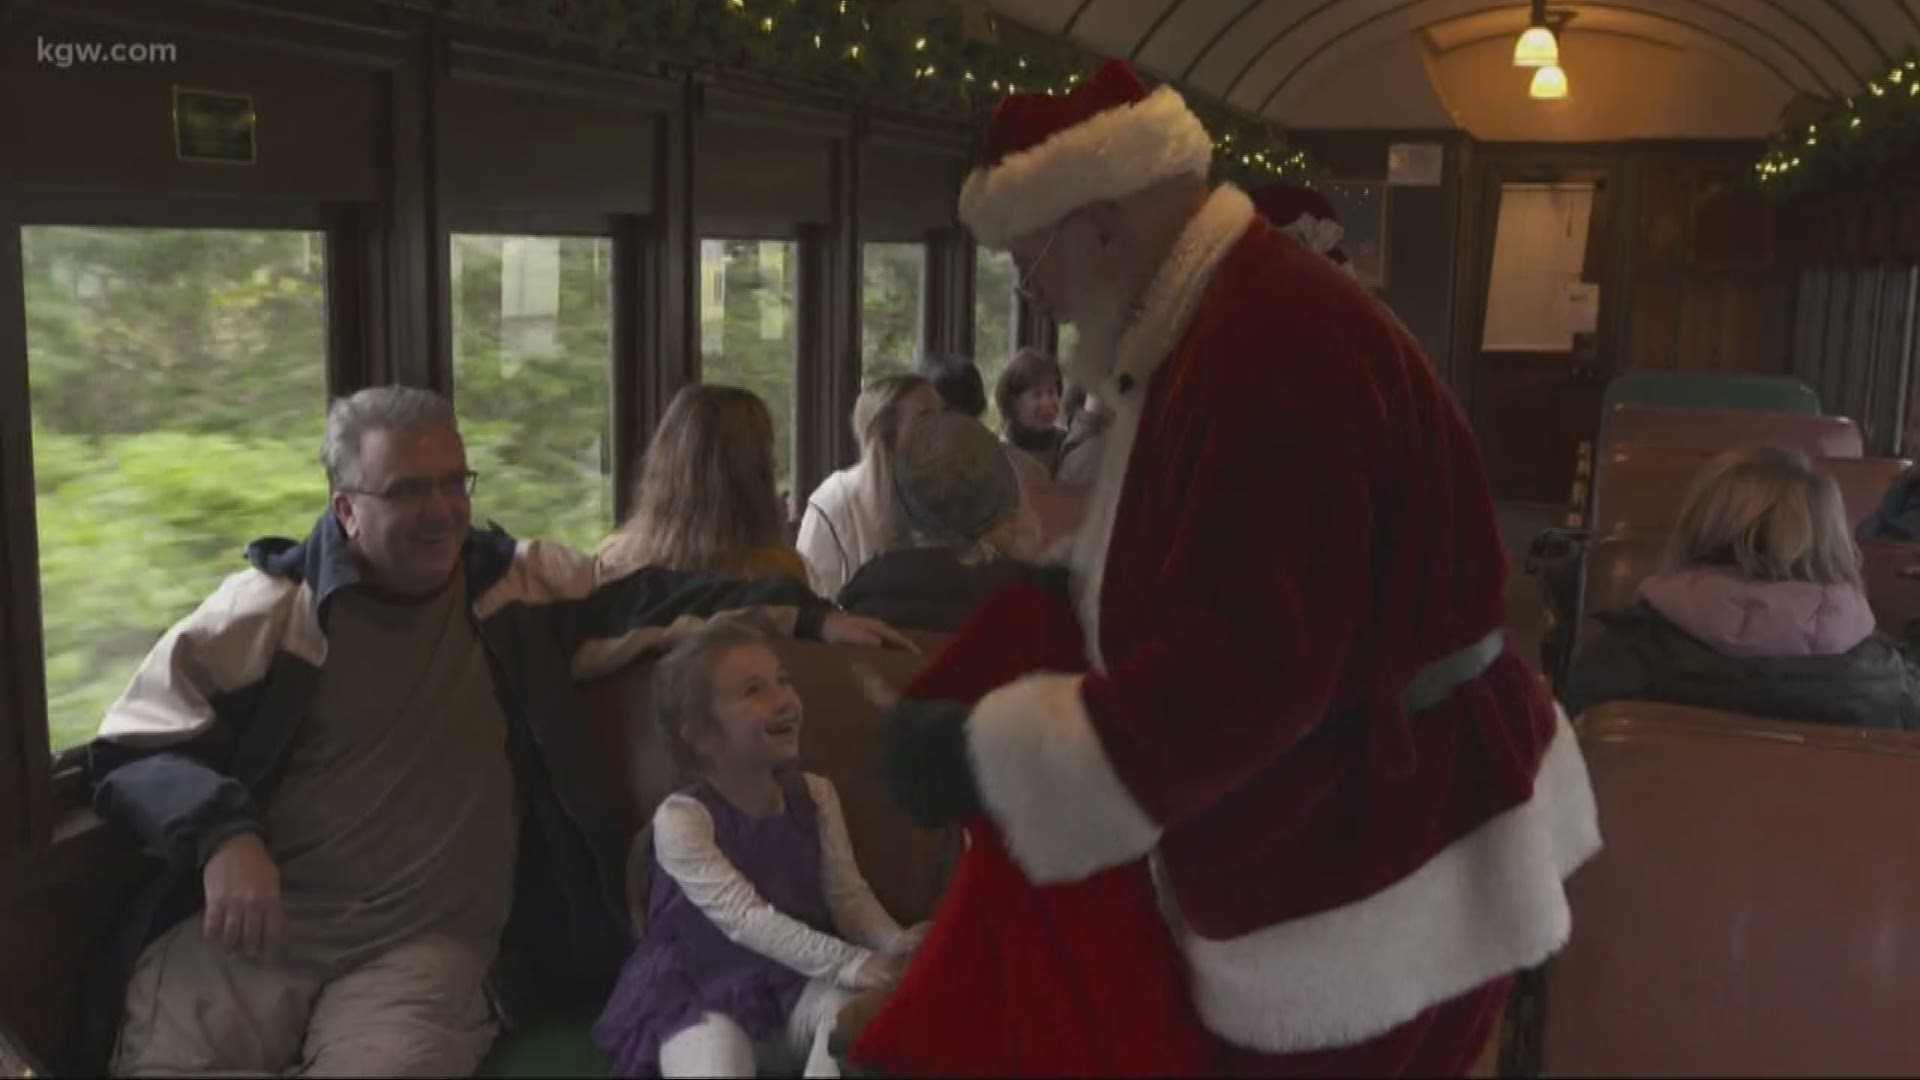 Grant's Getaways: Taking the Santa train